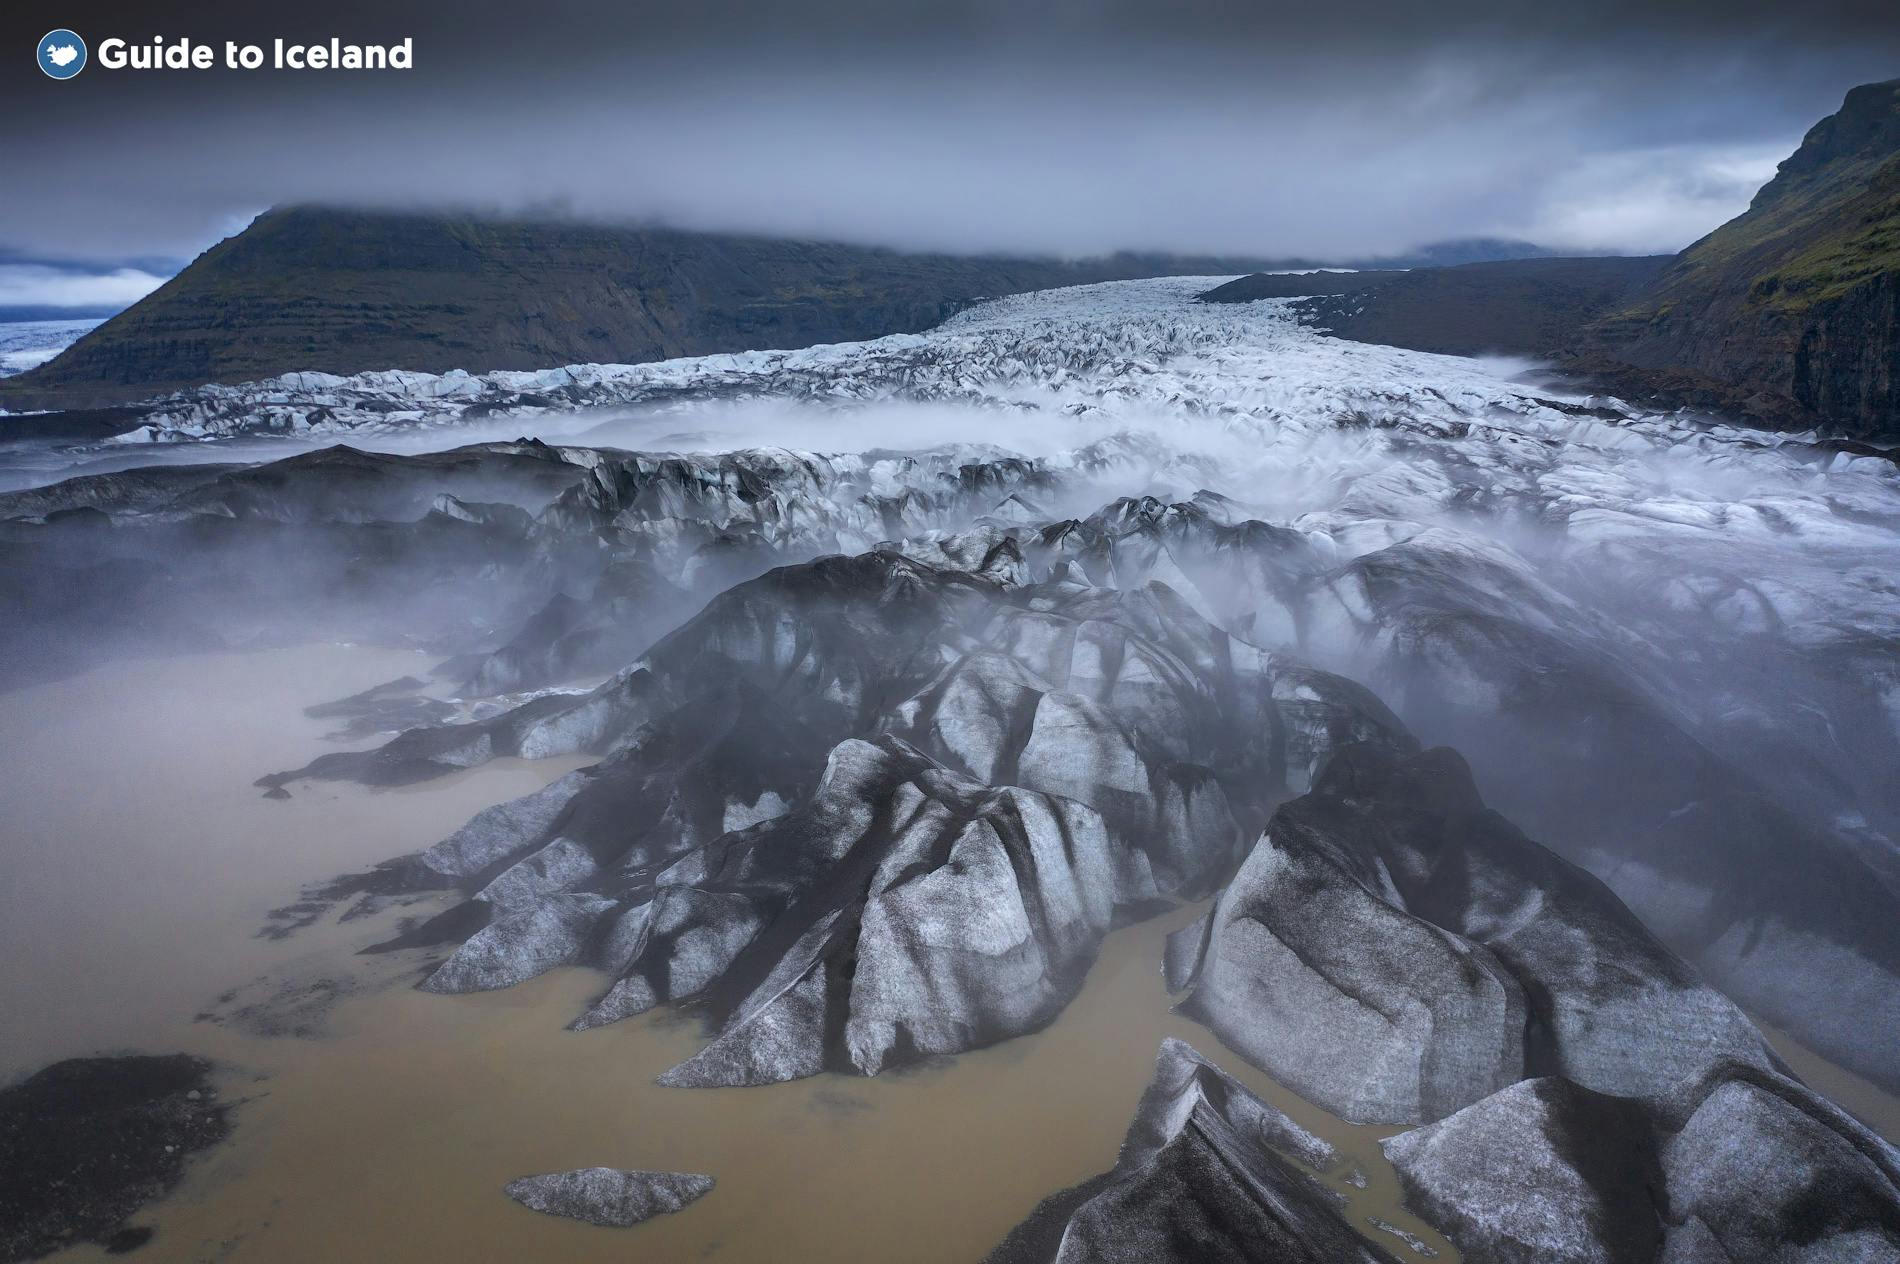 Een luchtfoto van een gletsjertong aan de Zuidkust van IJsland.